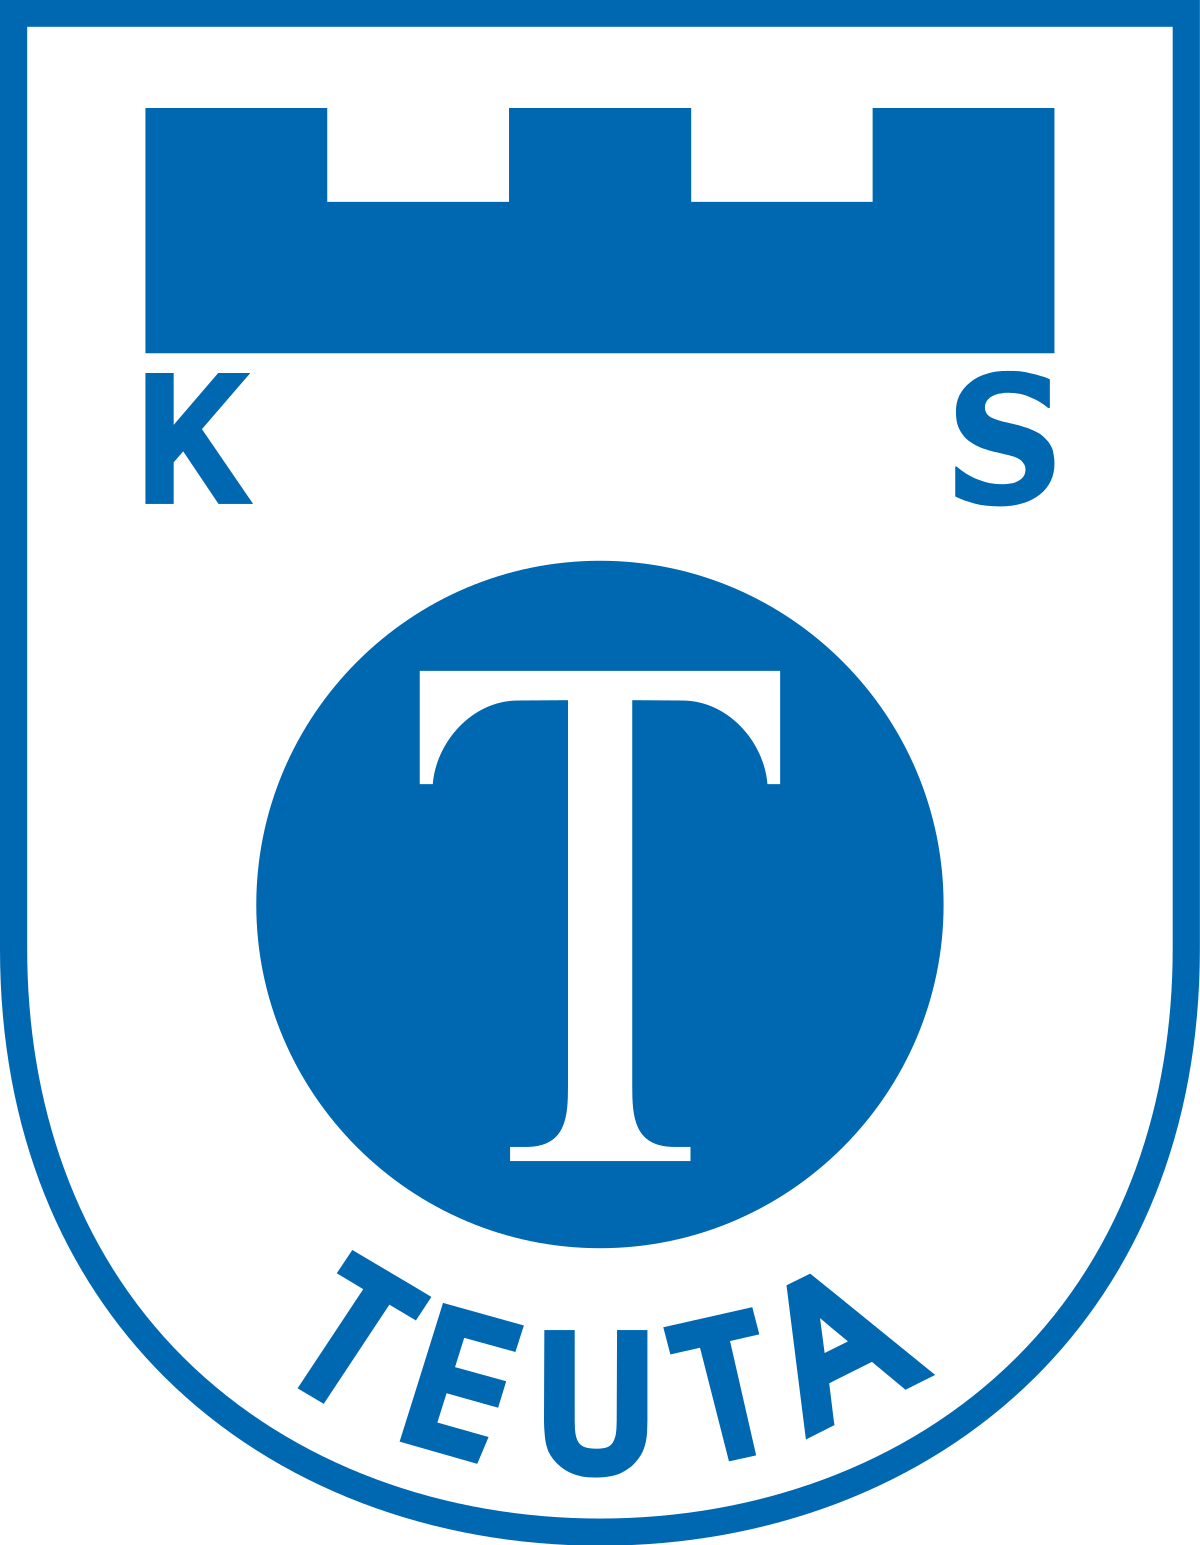 Teuta vs Egnatia Prediction: A draw is possible at halftime